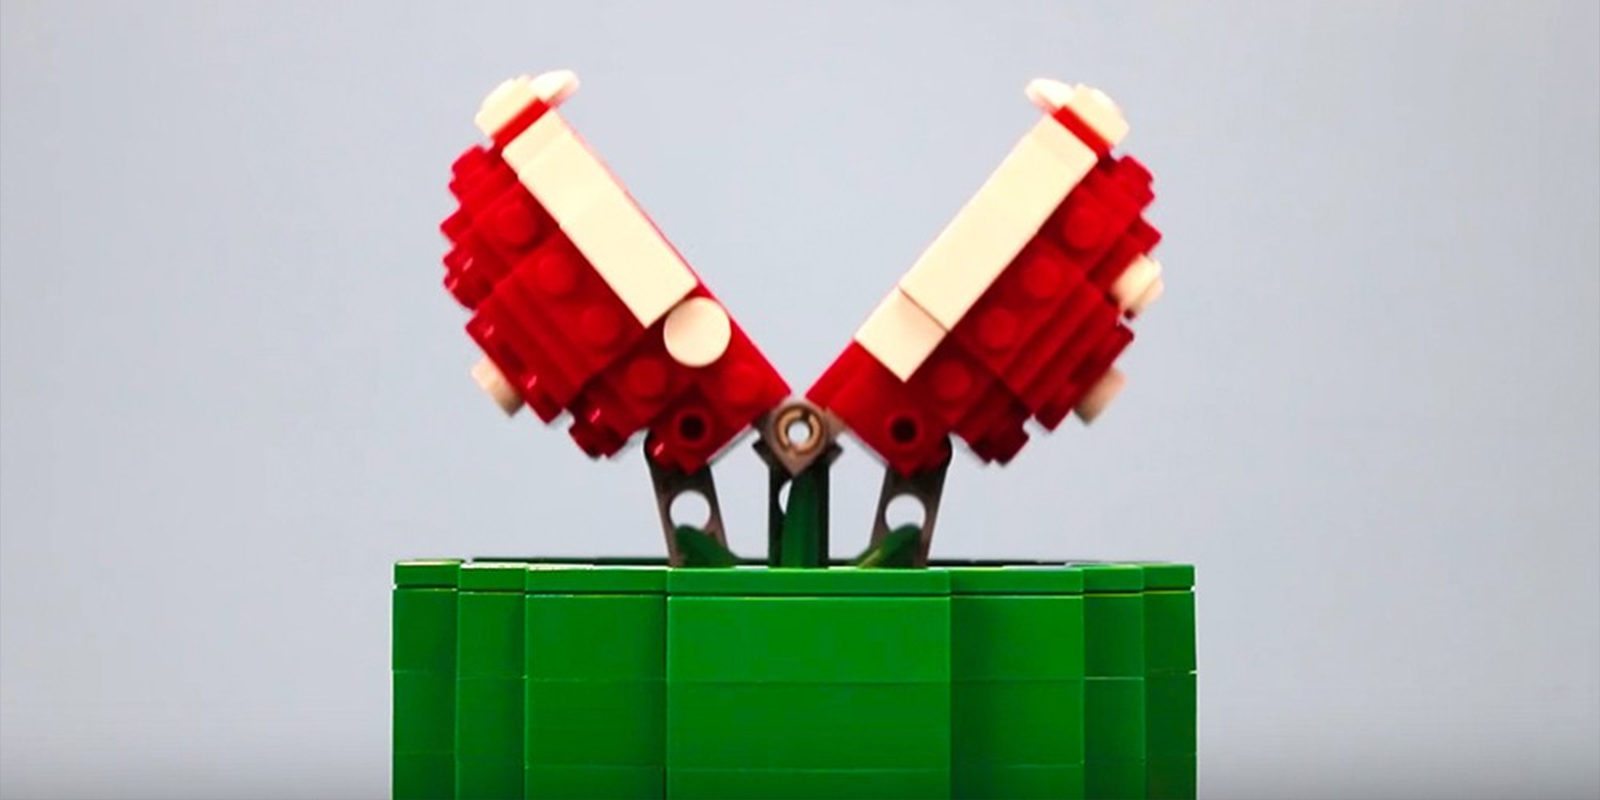 Descubre cómo crear tu propia planta piraña de 'Super Mario Bros' con piezas de LEGO